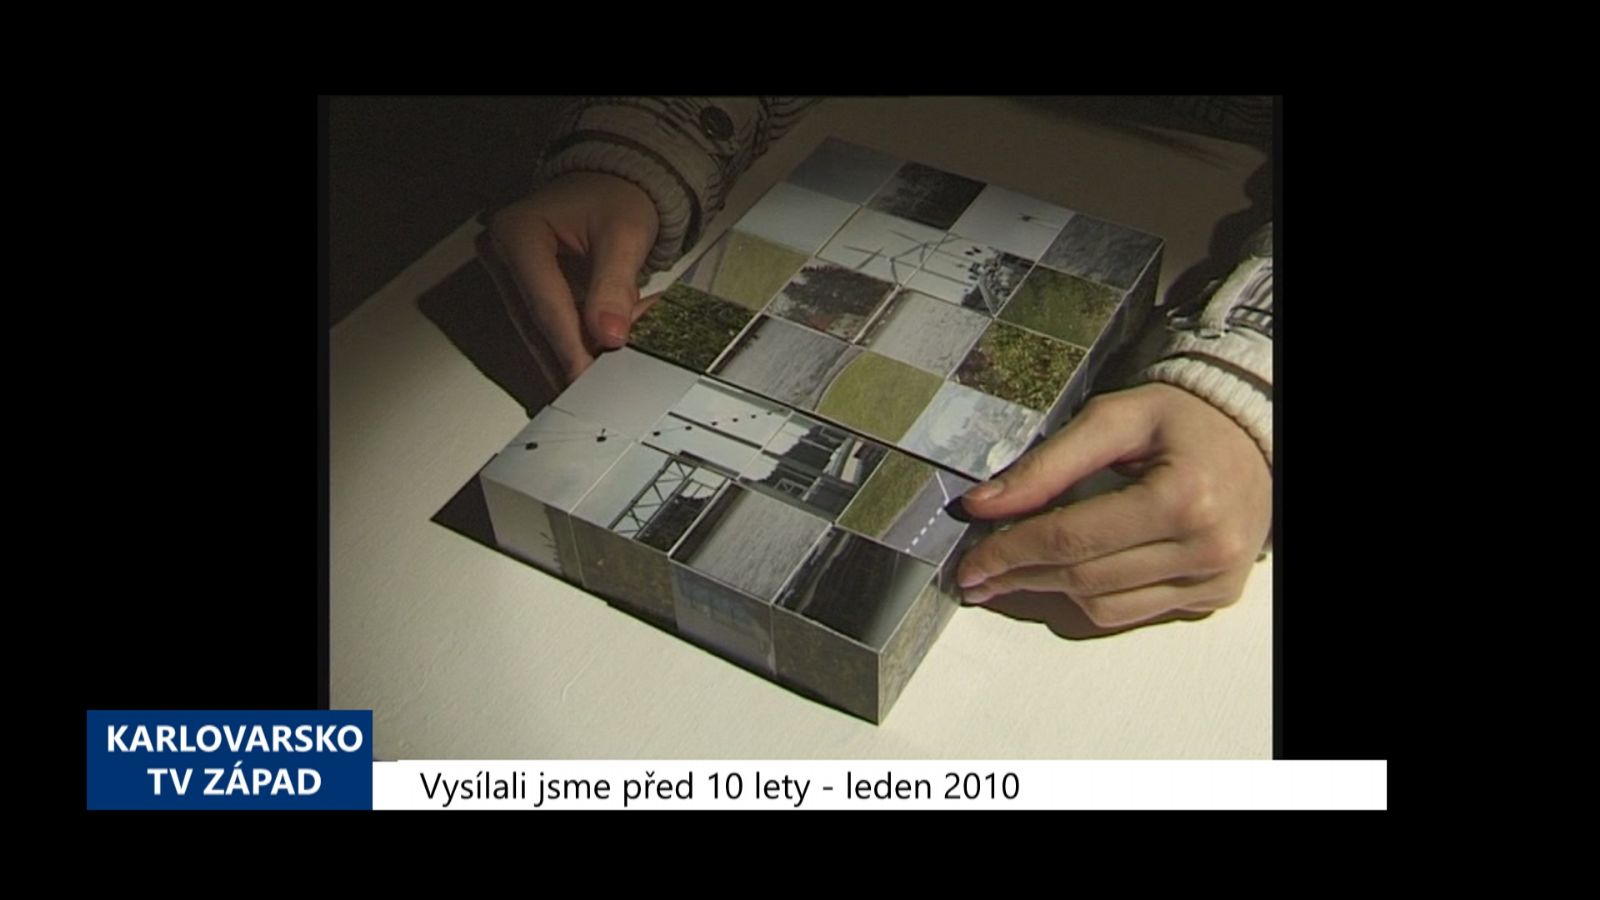 2010 – Cheb: Vnější prostor uvnitř Galerie4 (3949) (TV Západ)